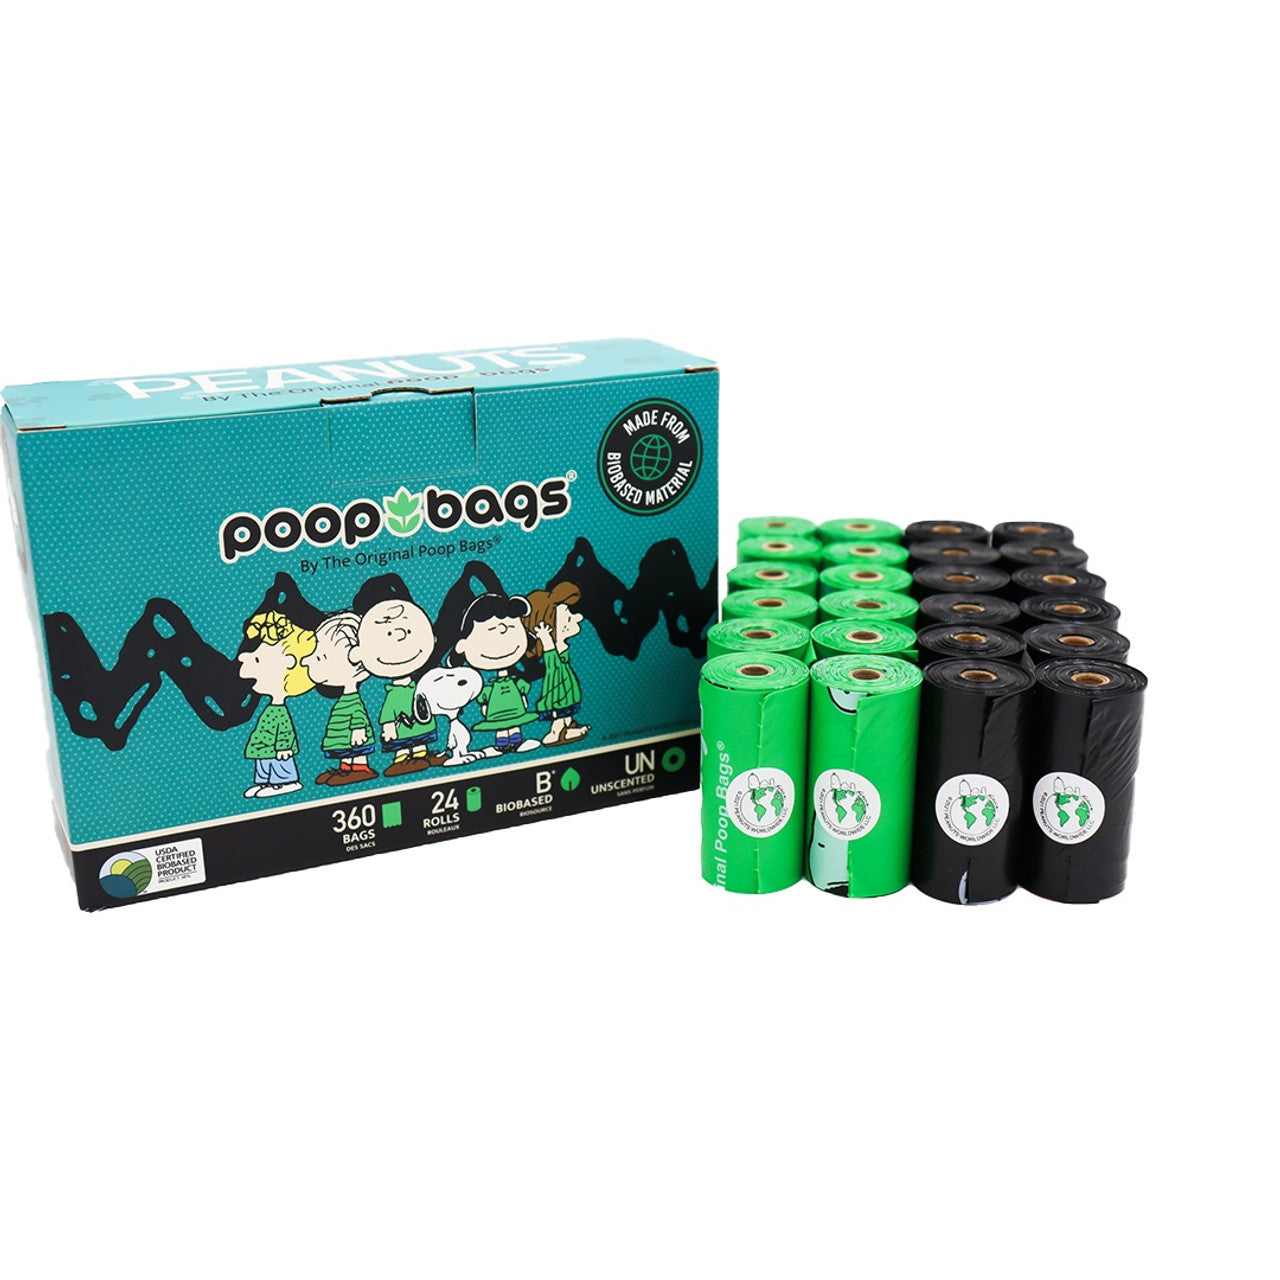 360 Bolsas p/Popo - Poop Bags de Snoopy (24 Rollos con 15 Bolsas)